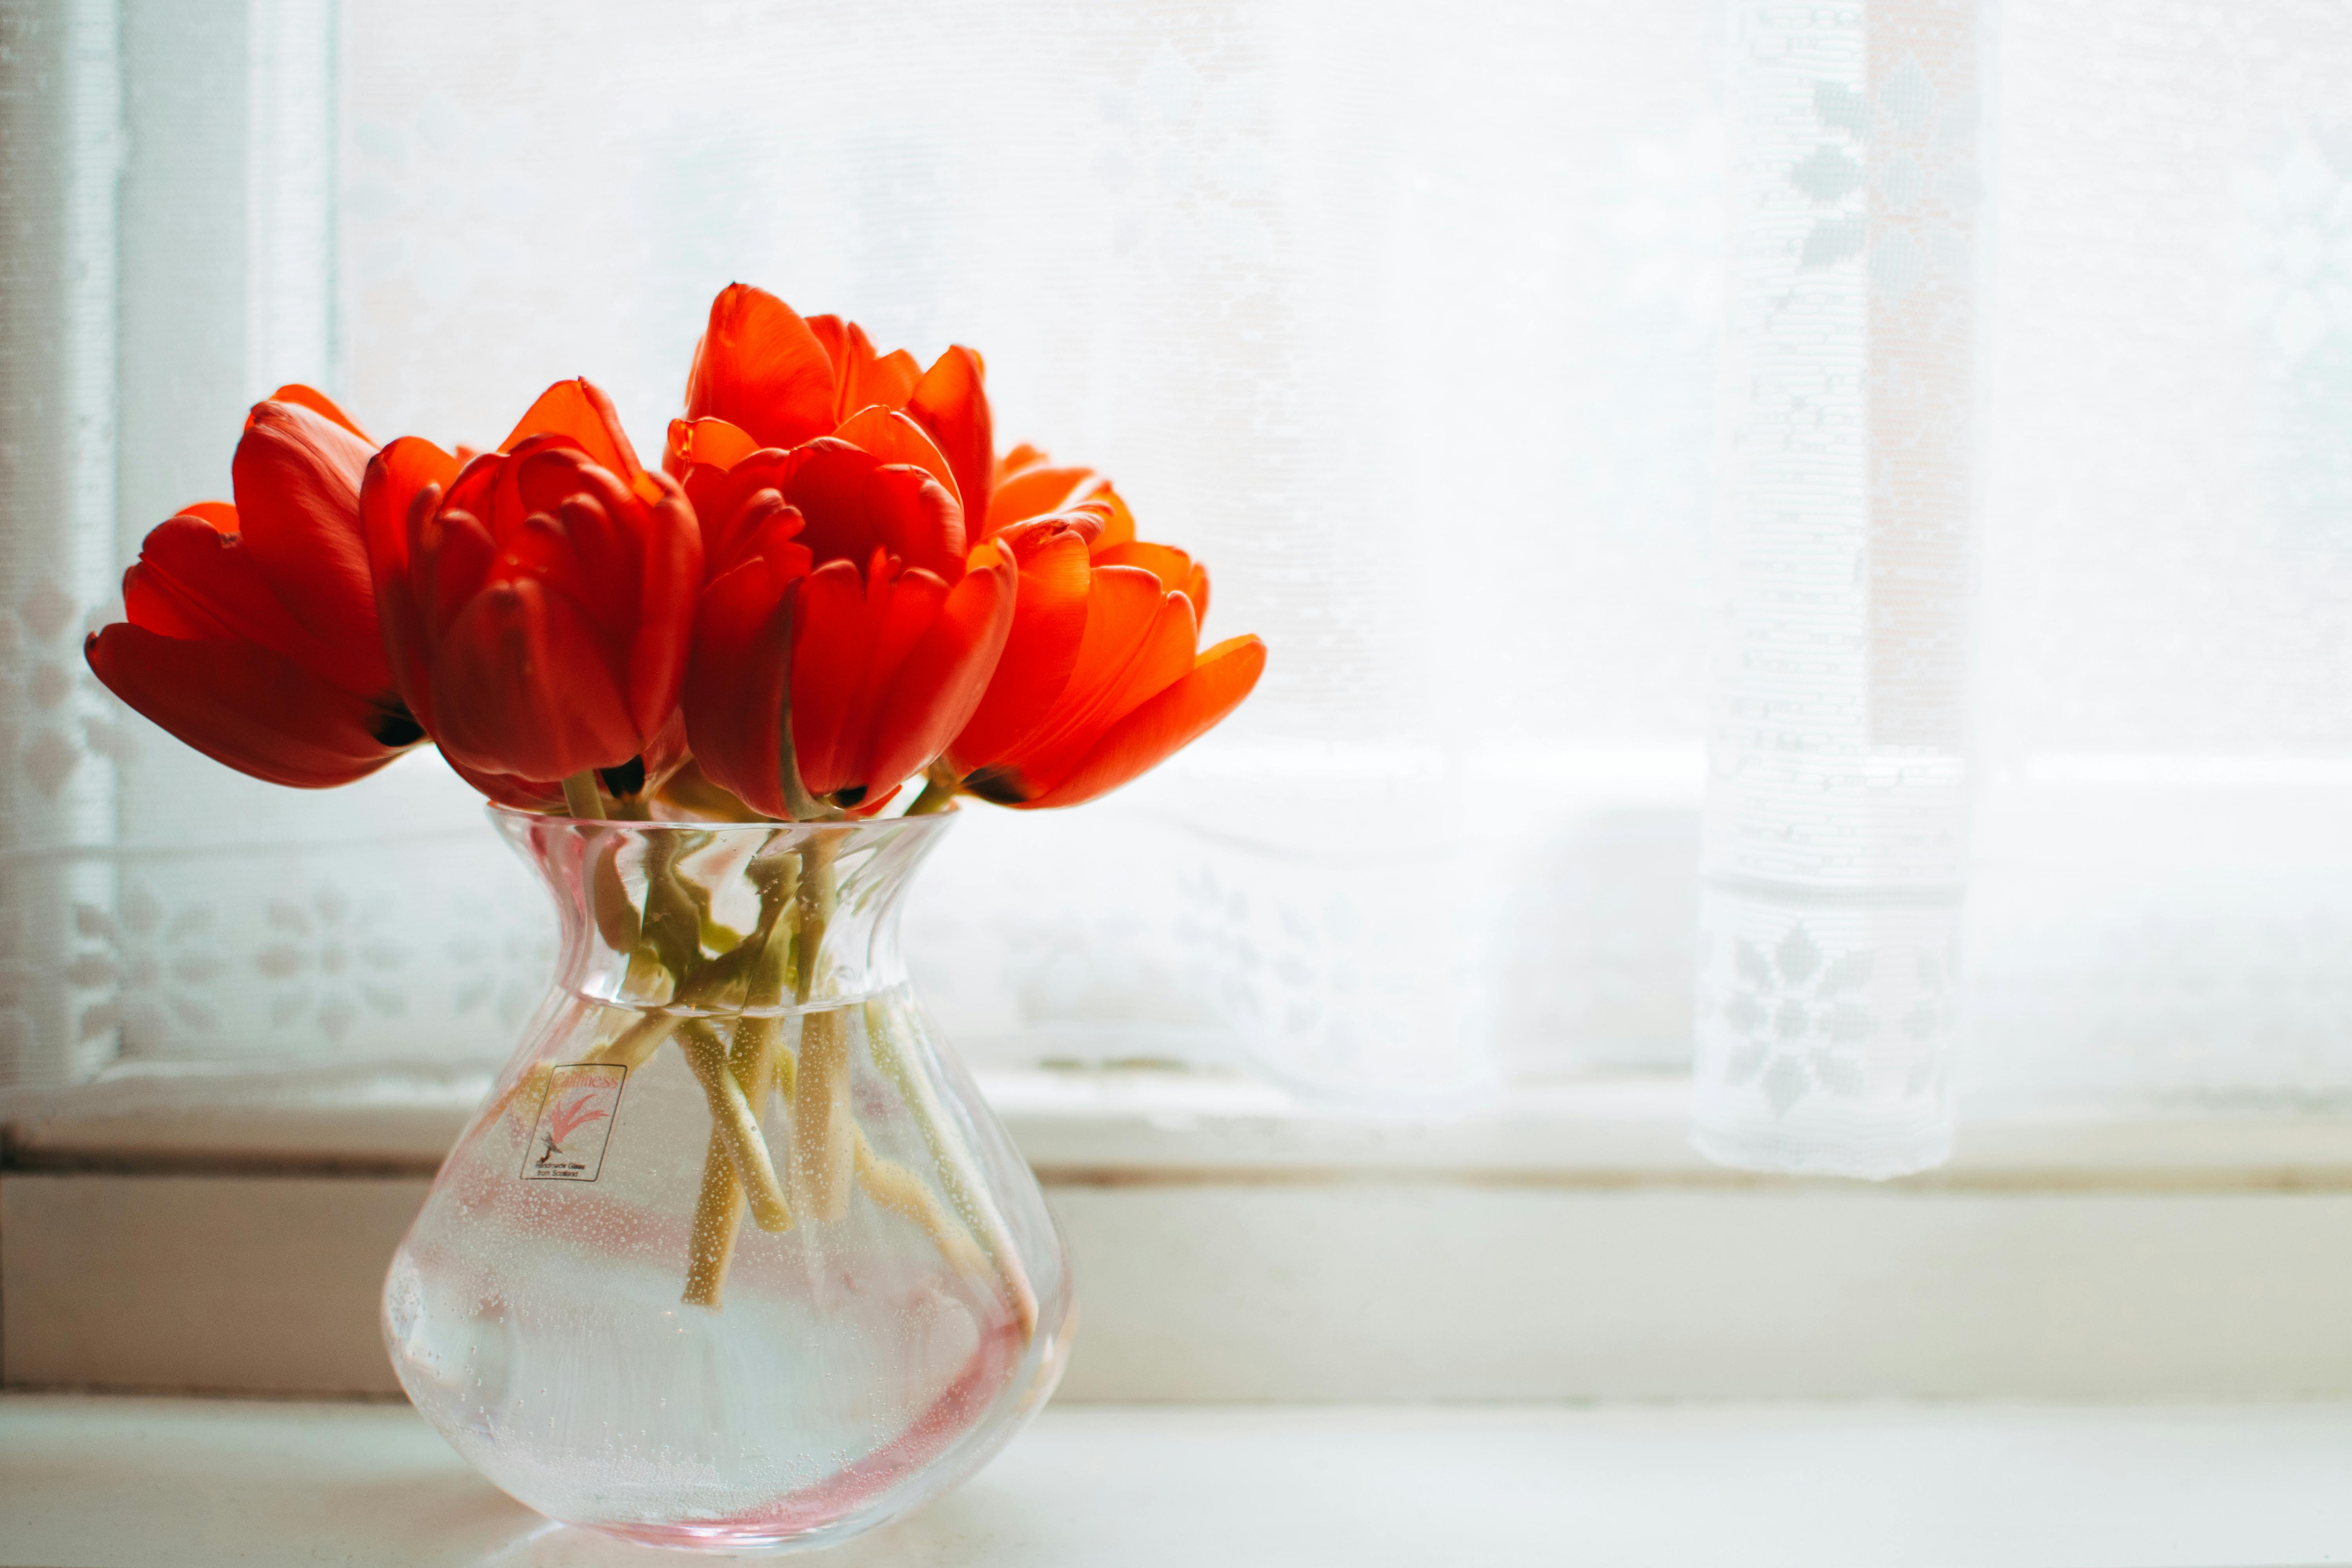 Подаренный букет простоит очень долго: как сохранить свежесть тюльпанов в вазе